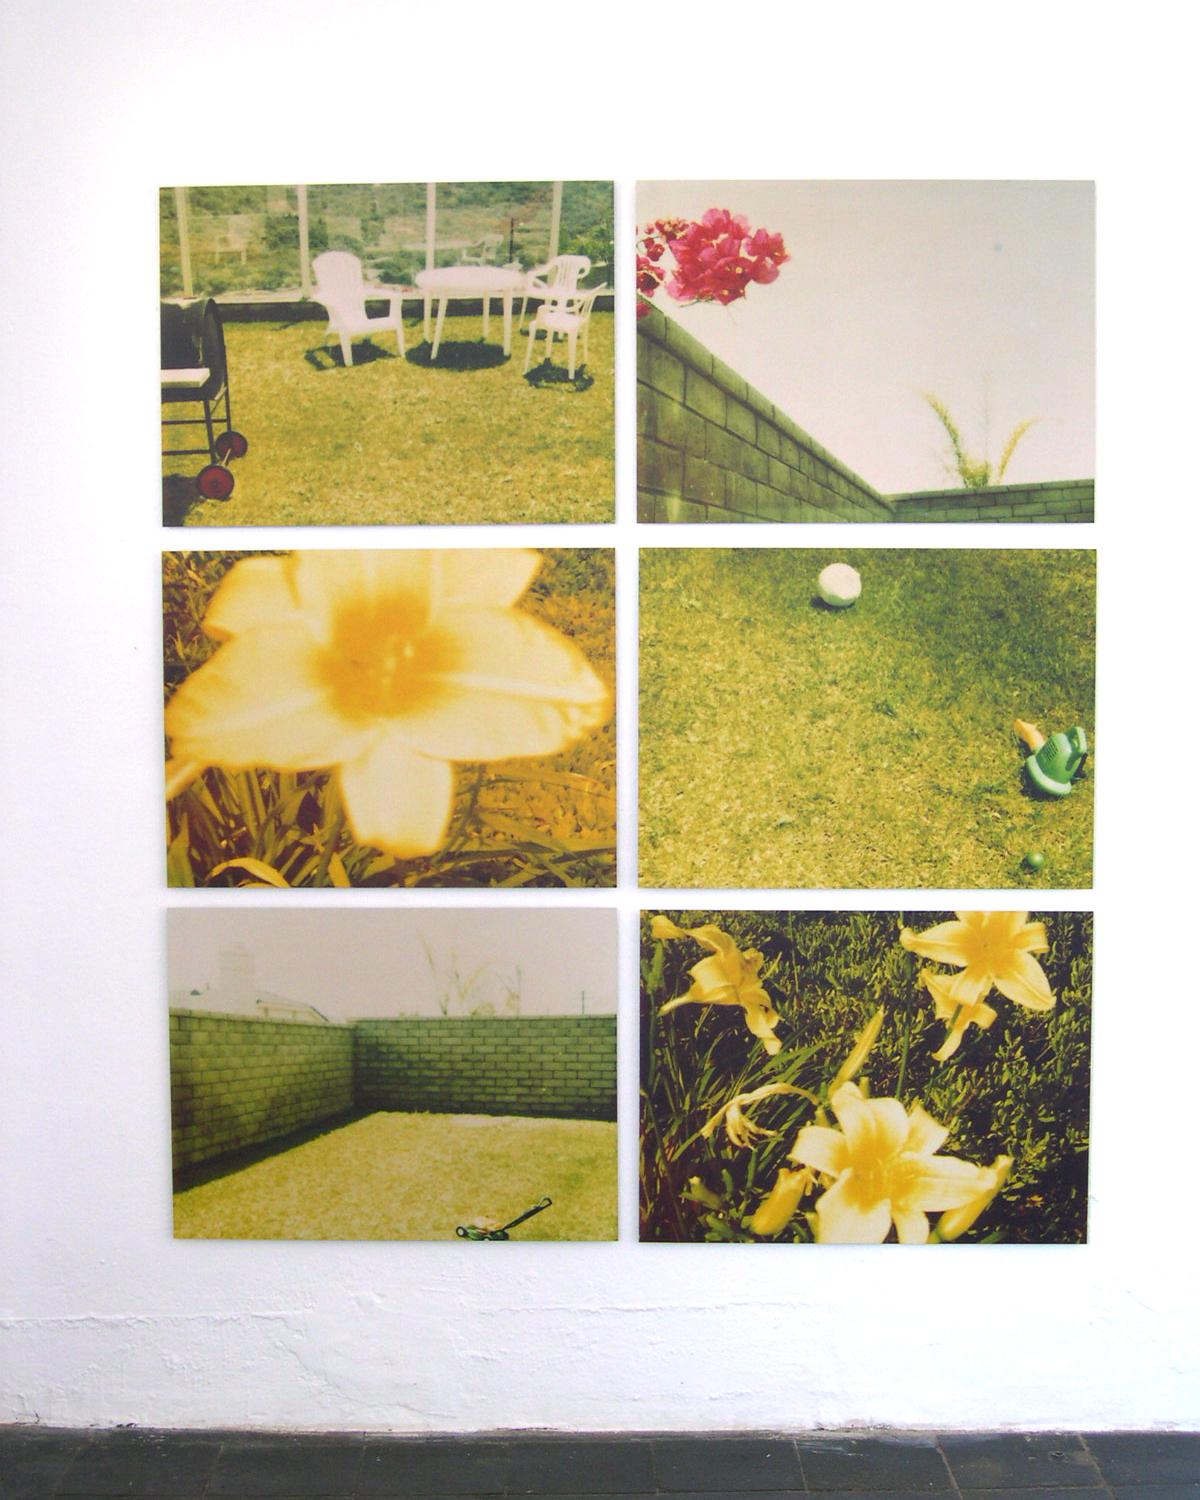 Suburbia, analog, mounted. Polaroid, photograph, 21st Century, landscape,  5